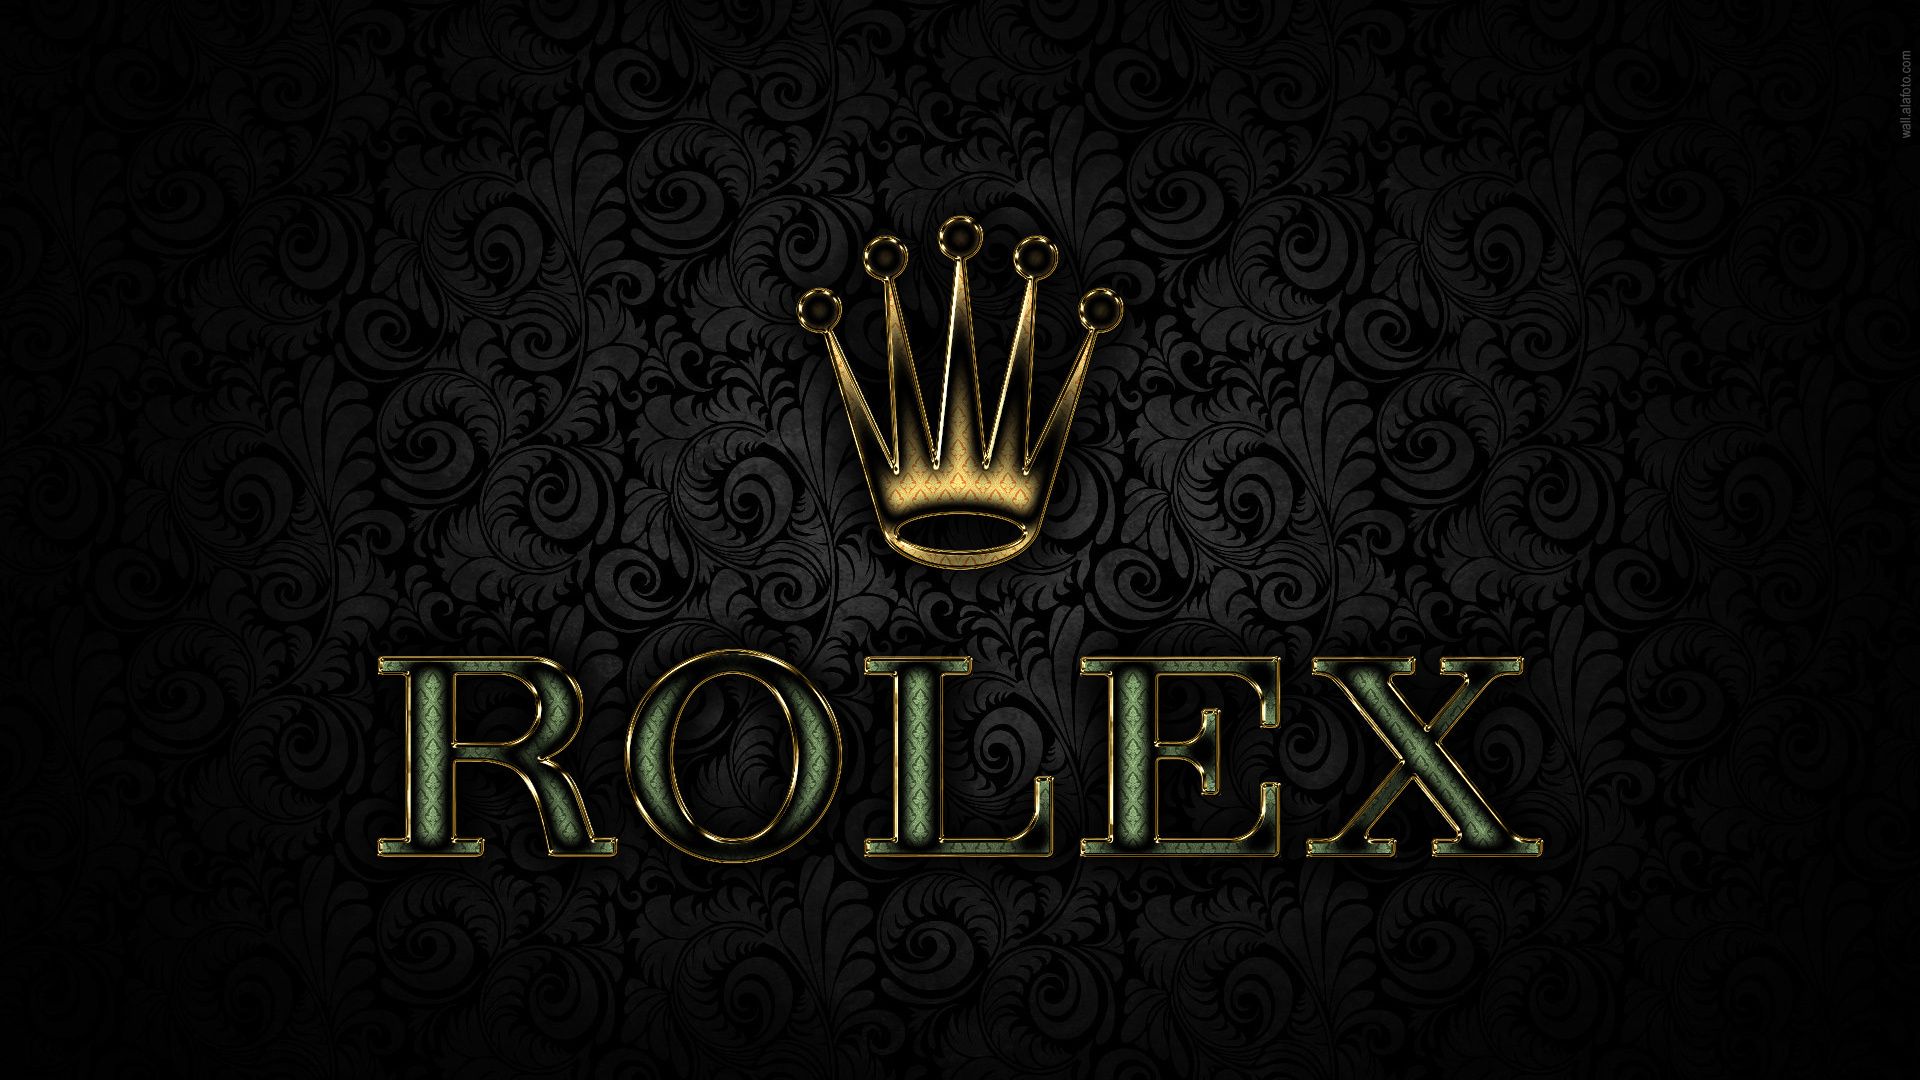 Logotipo de la marca Rolex #Wallpaper - HD Wallpapers